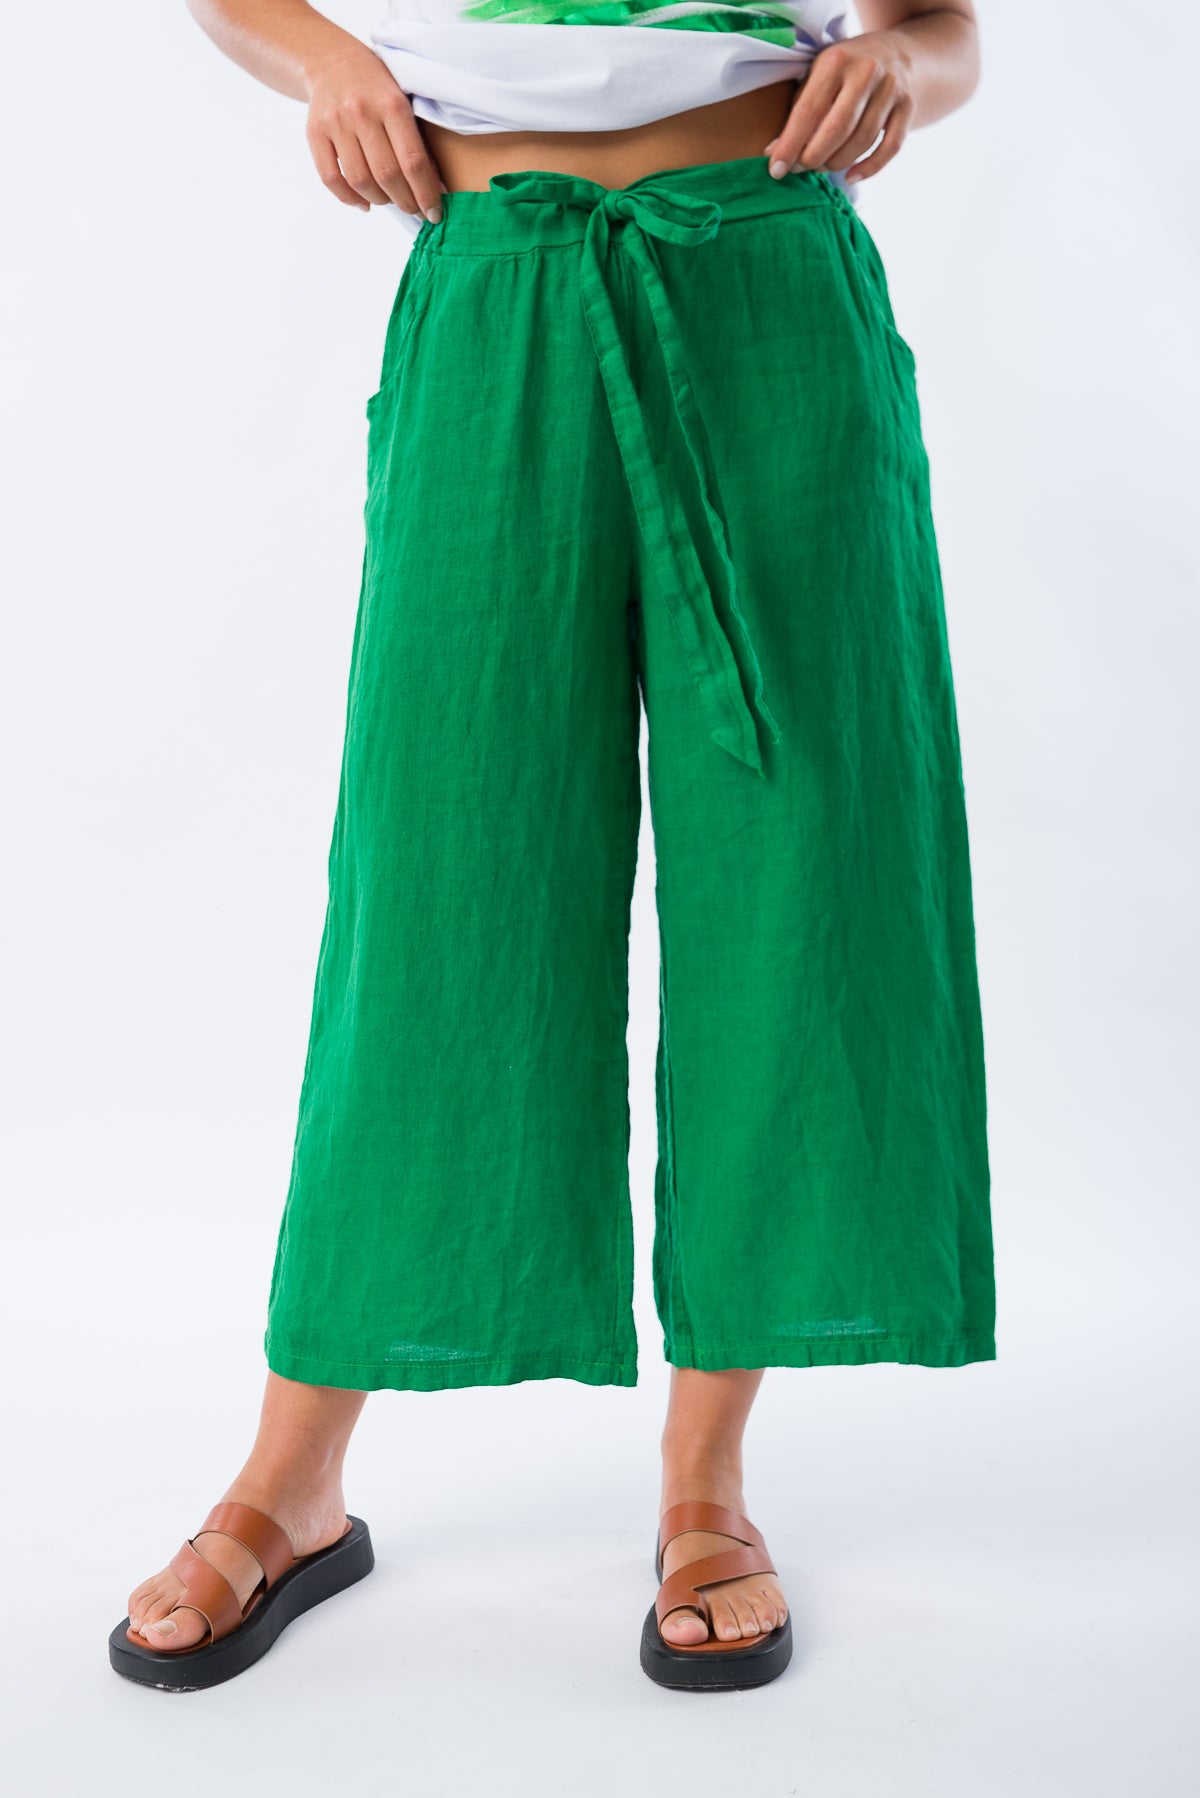 Pantalón Corto de Lino Verde Ingles